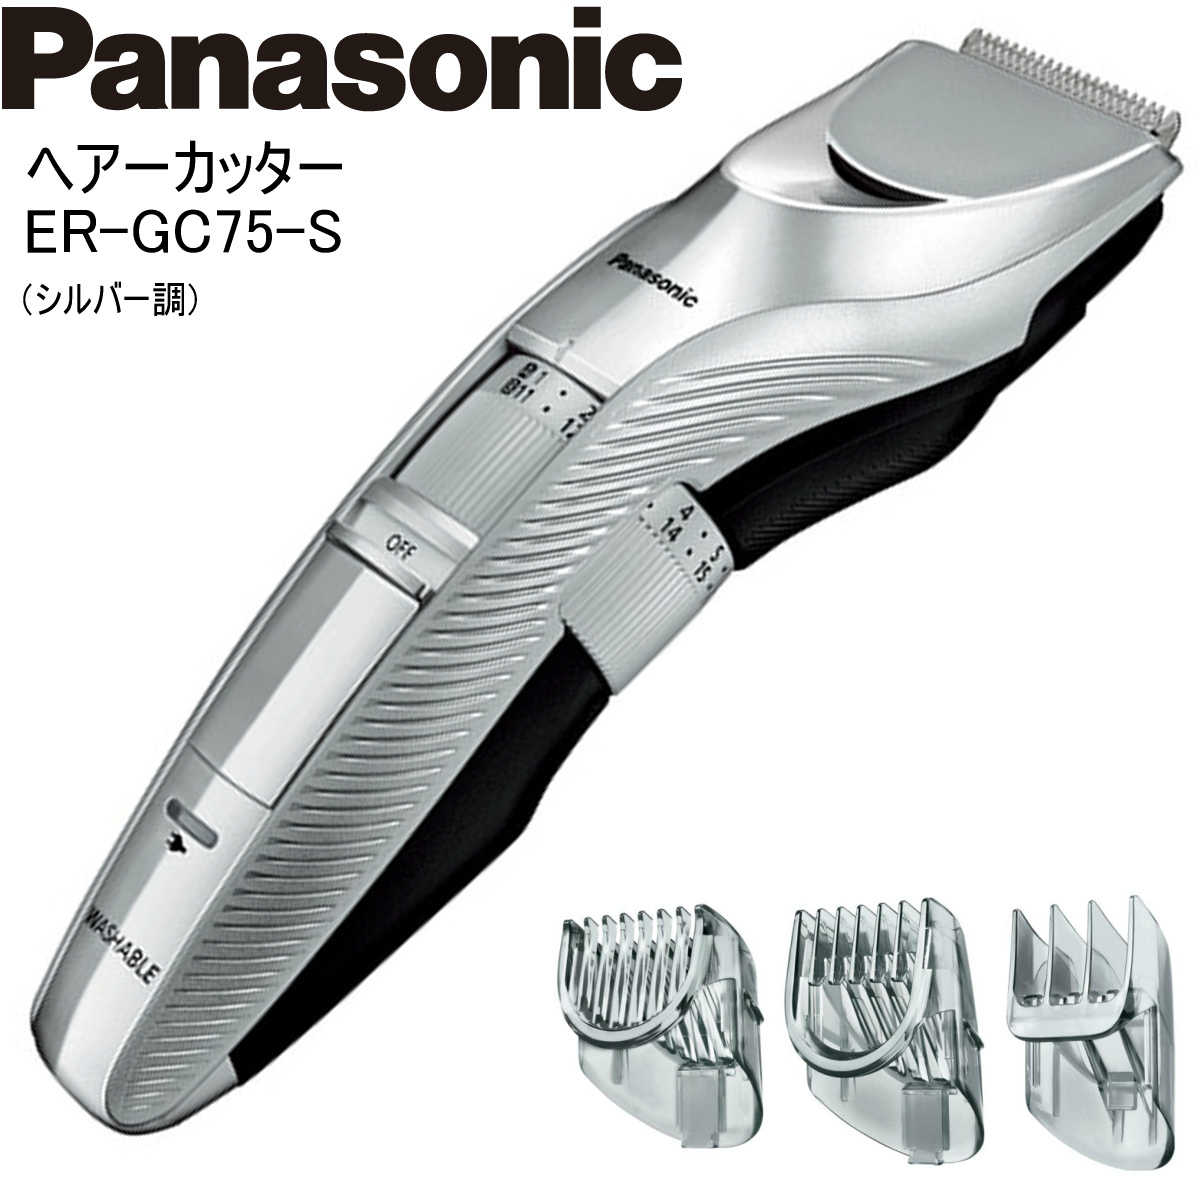 Panasonic パナソニック ヘアーカッター ER-GC75-S シルバー調 バリカン 充電・交流式 水洗い  i-shopさくらPayPayモール店 - 通販 - PayPayモール